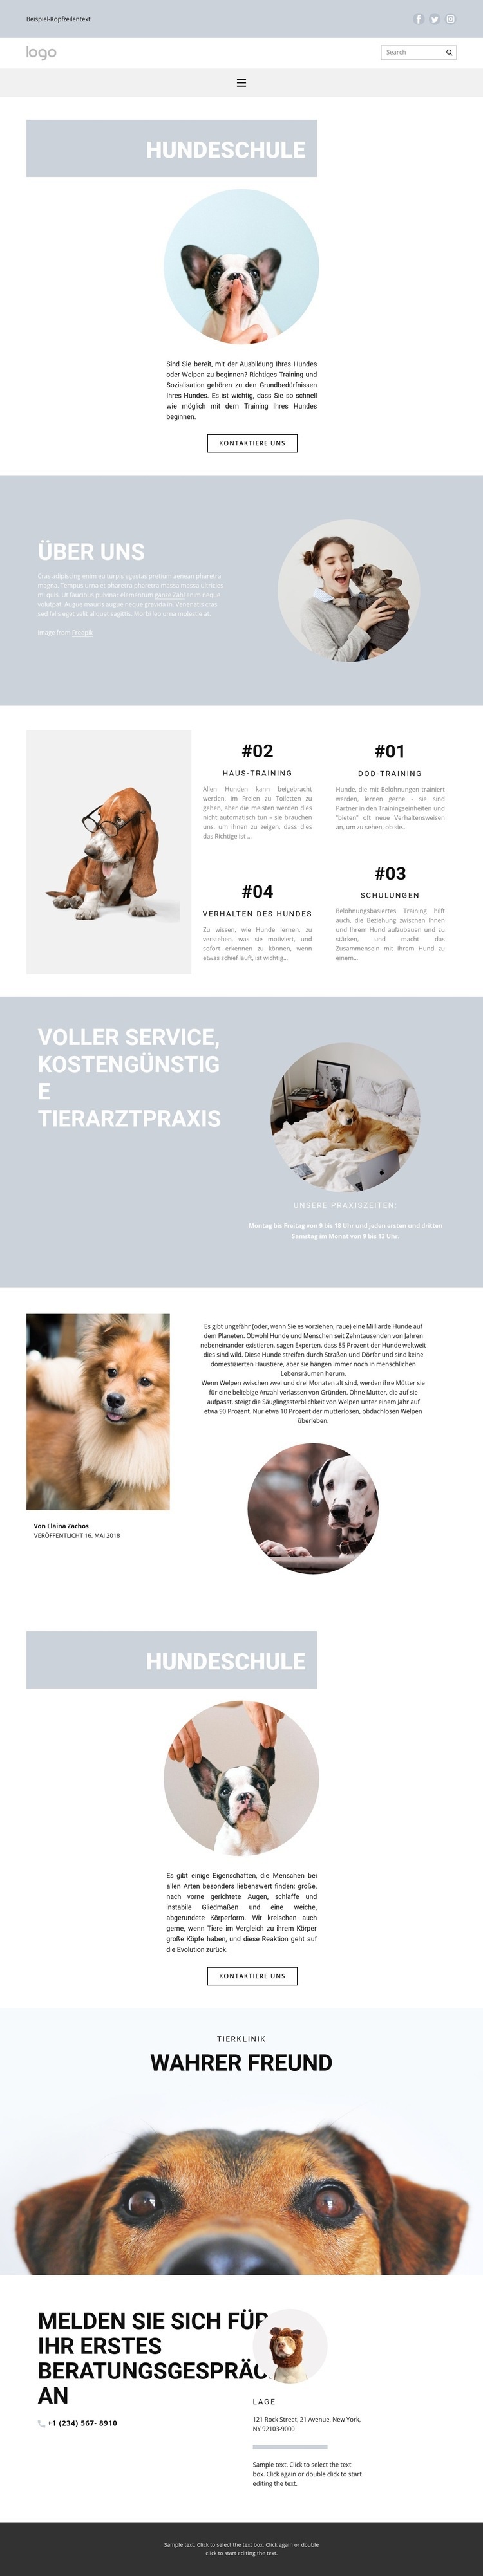 Hunde aufziehen Website design